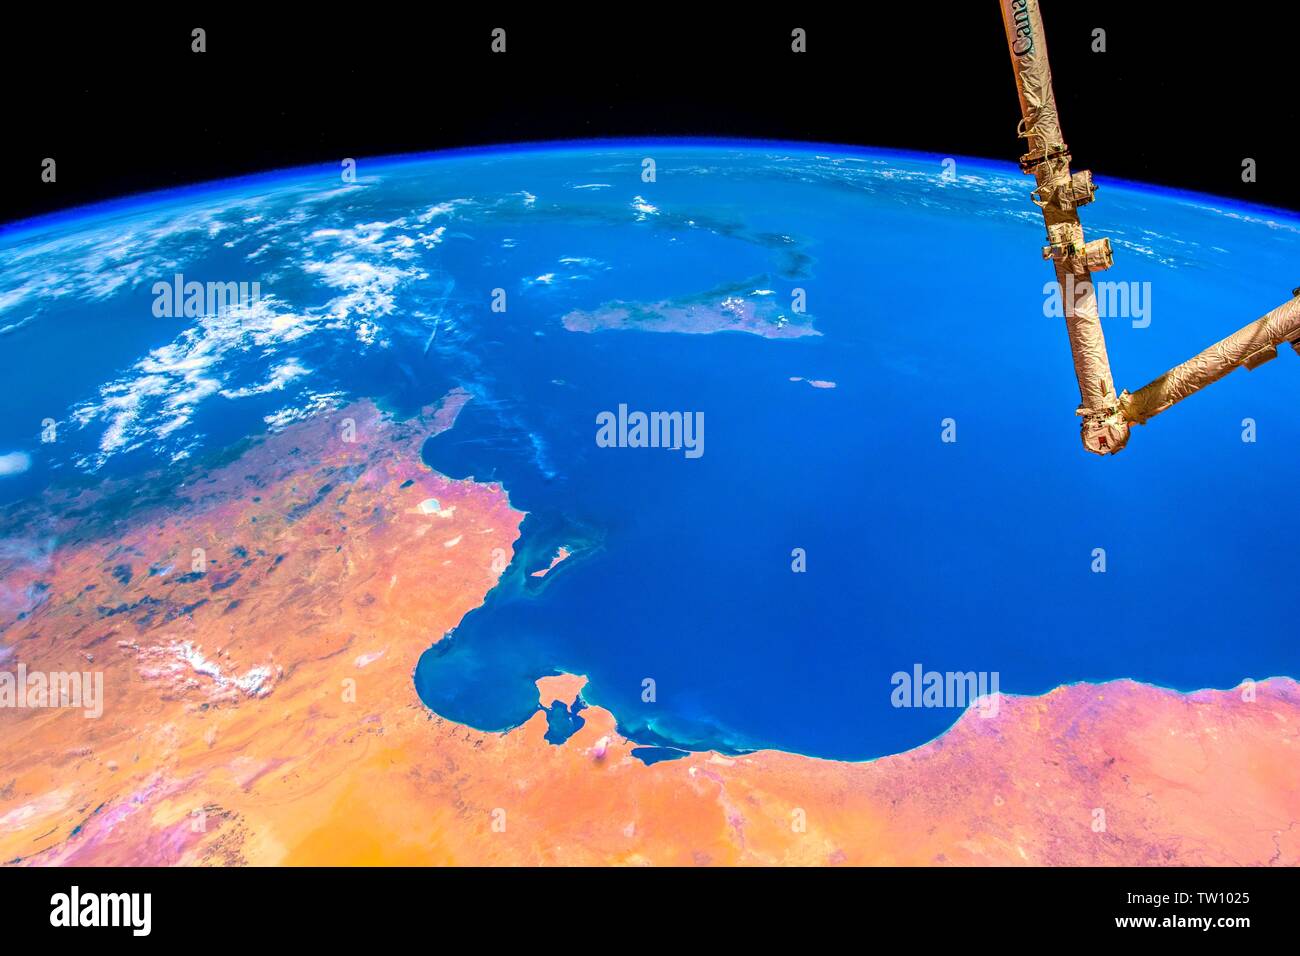 Corteza de color vibrante de nuestro planeta. La belleza de la naturaleza de nuestro planeta visto desde la Estación Espacial Internacional (ISS). La imagen es una publi Foto de stock